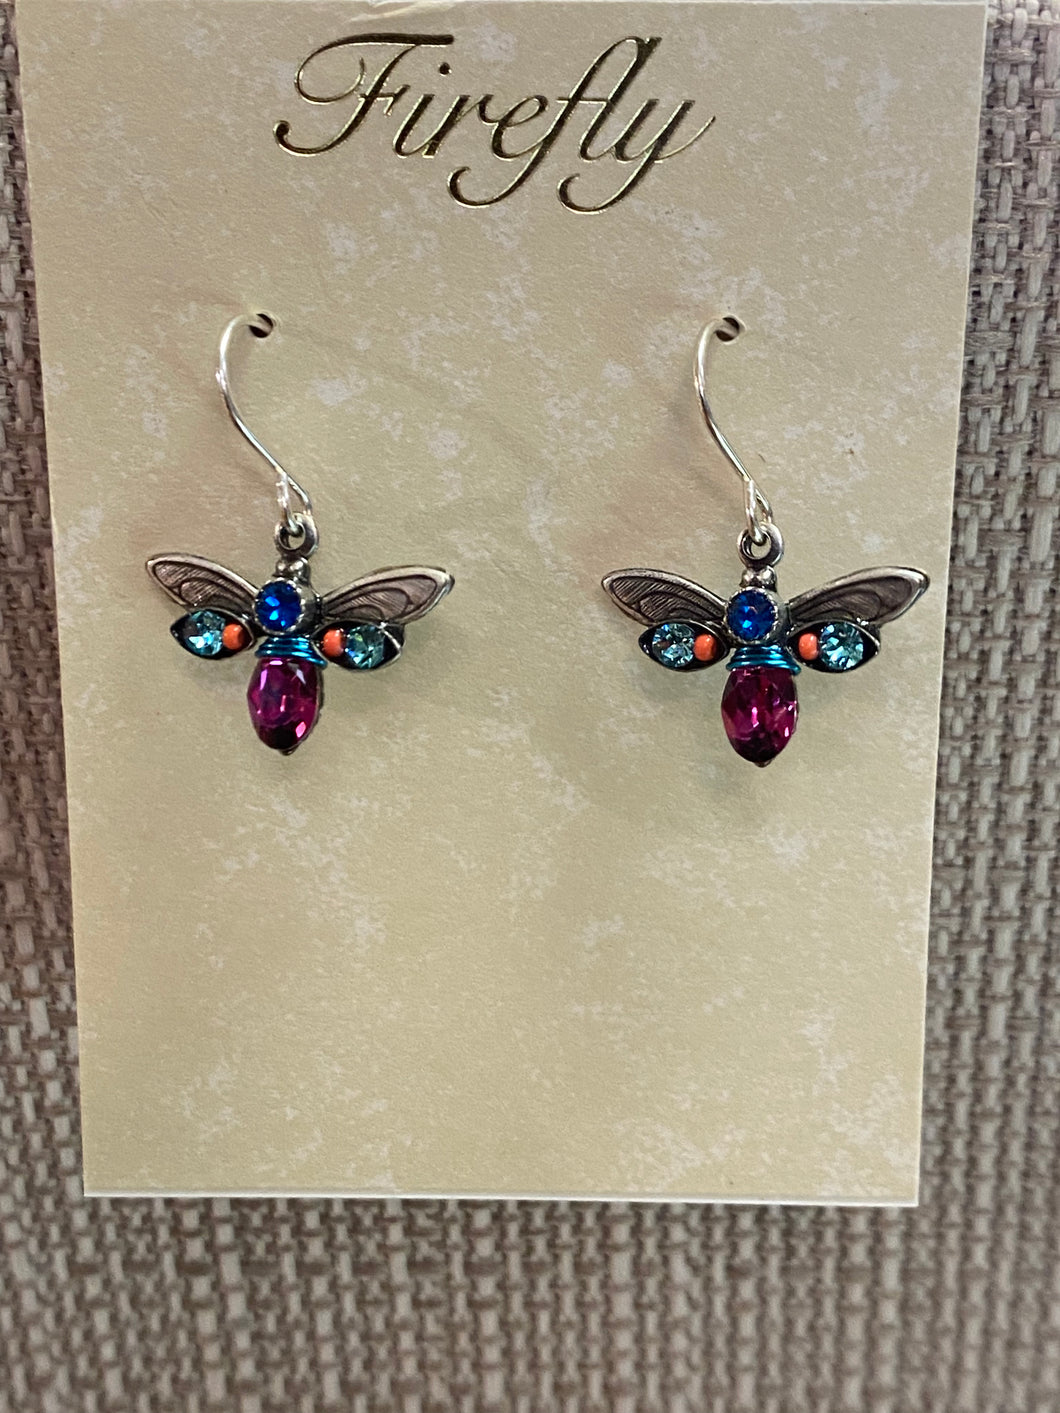 Fuschia Bee earrings by Firefly jewelry